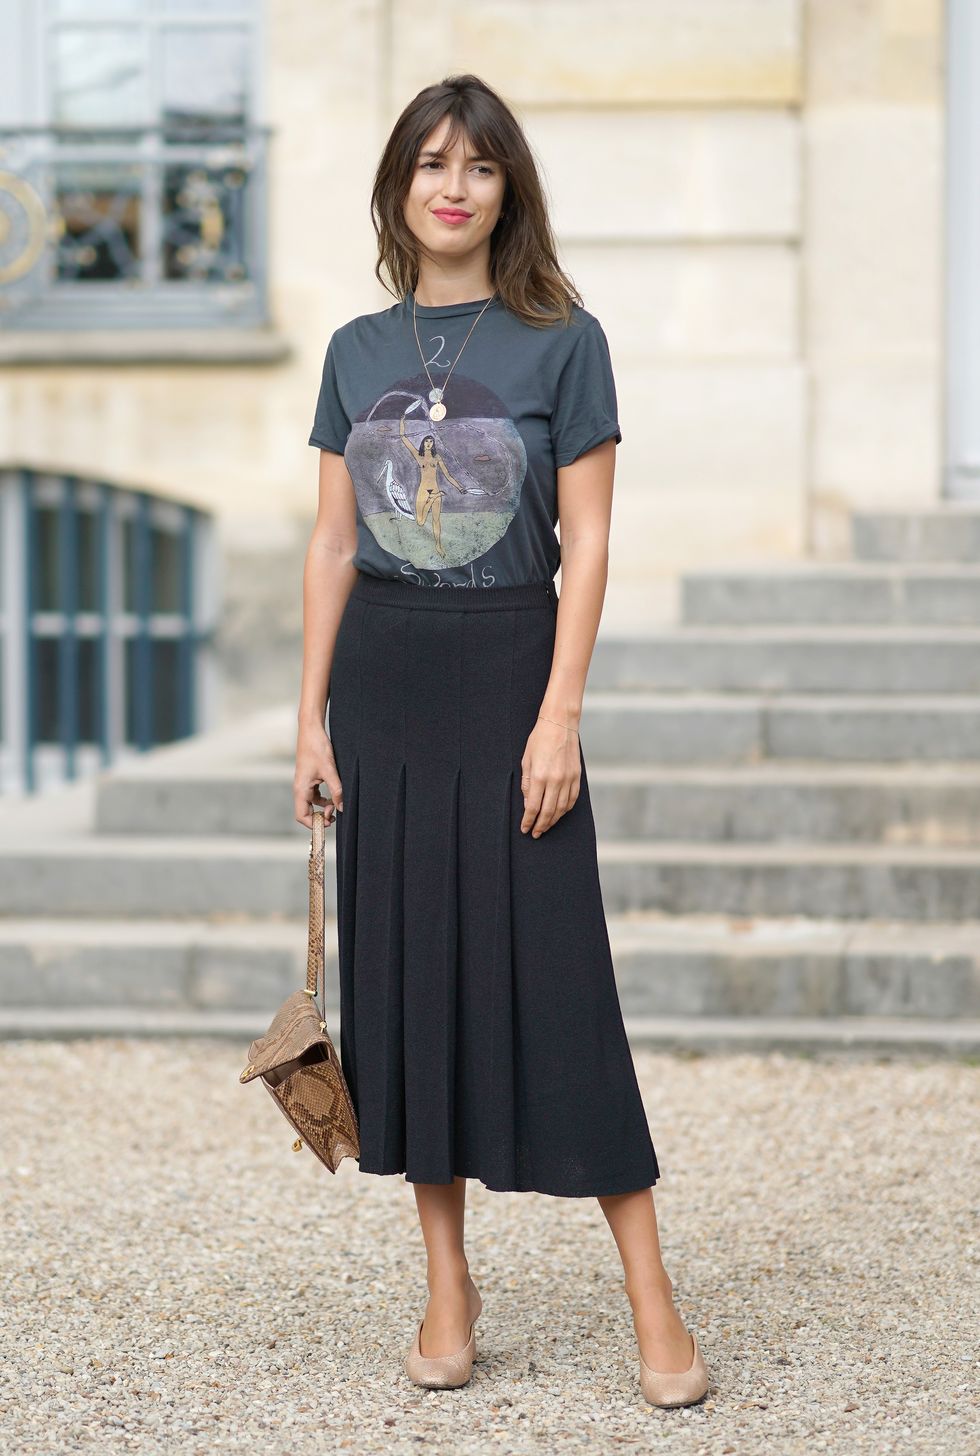 ジャンヌ・ダマスの黒ロングスカートはクラシックなデザイン。